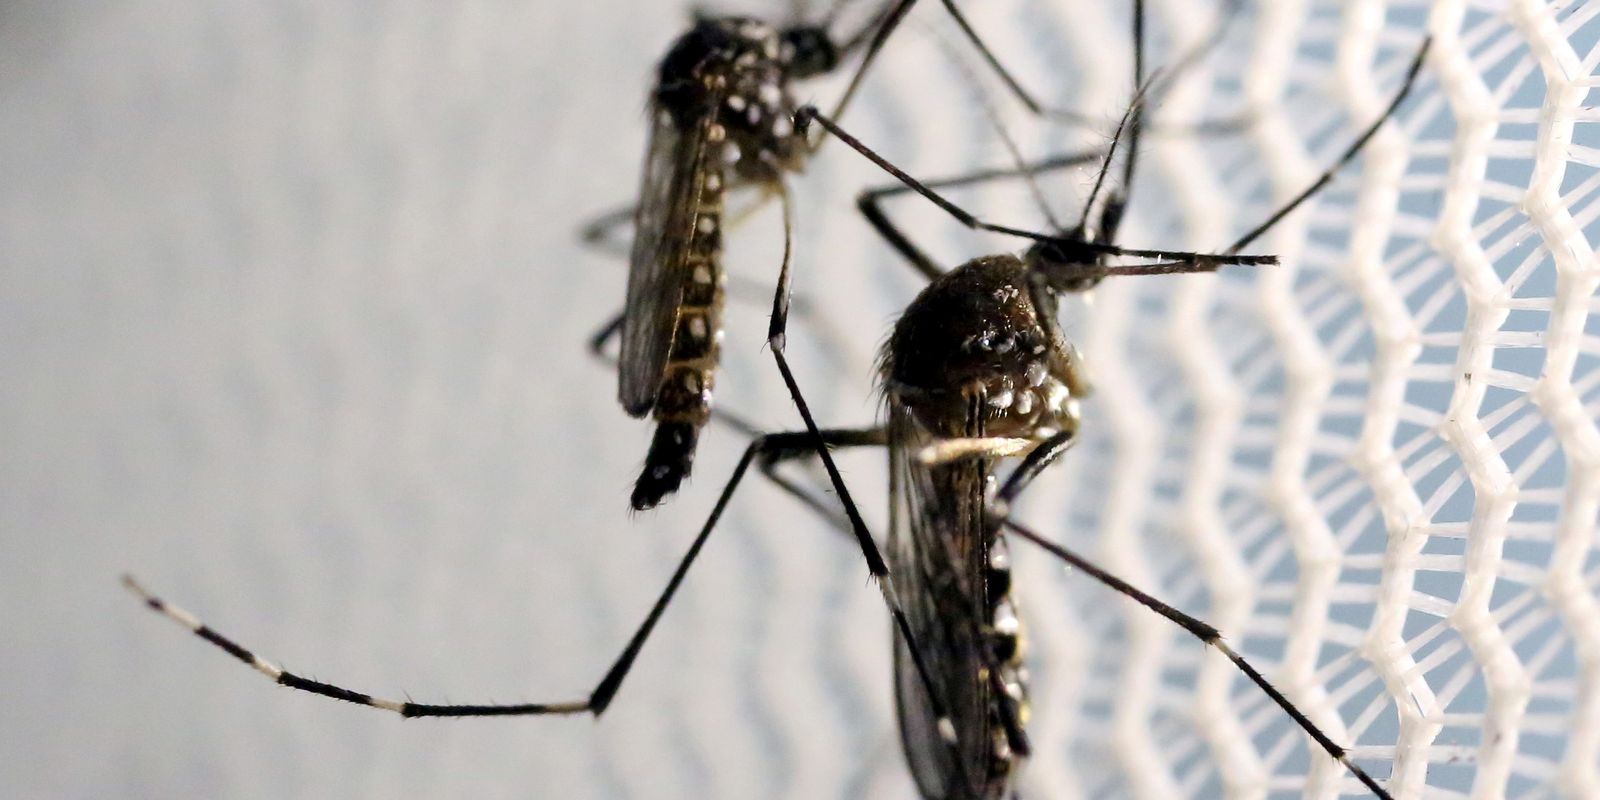 cidade-do-rio-registra-mais-de-2-mil-casos-de-dengue-em-24-horas